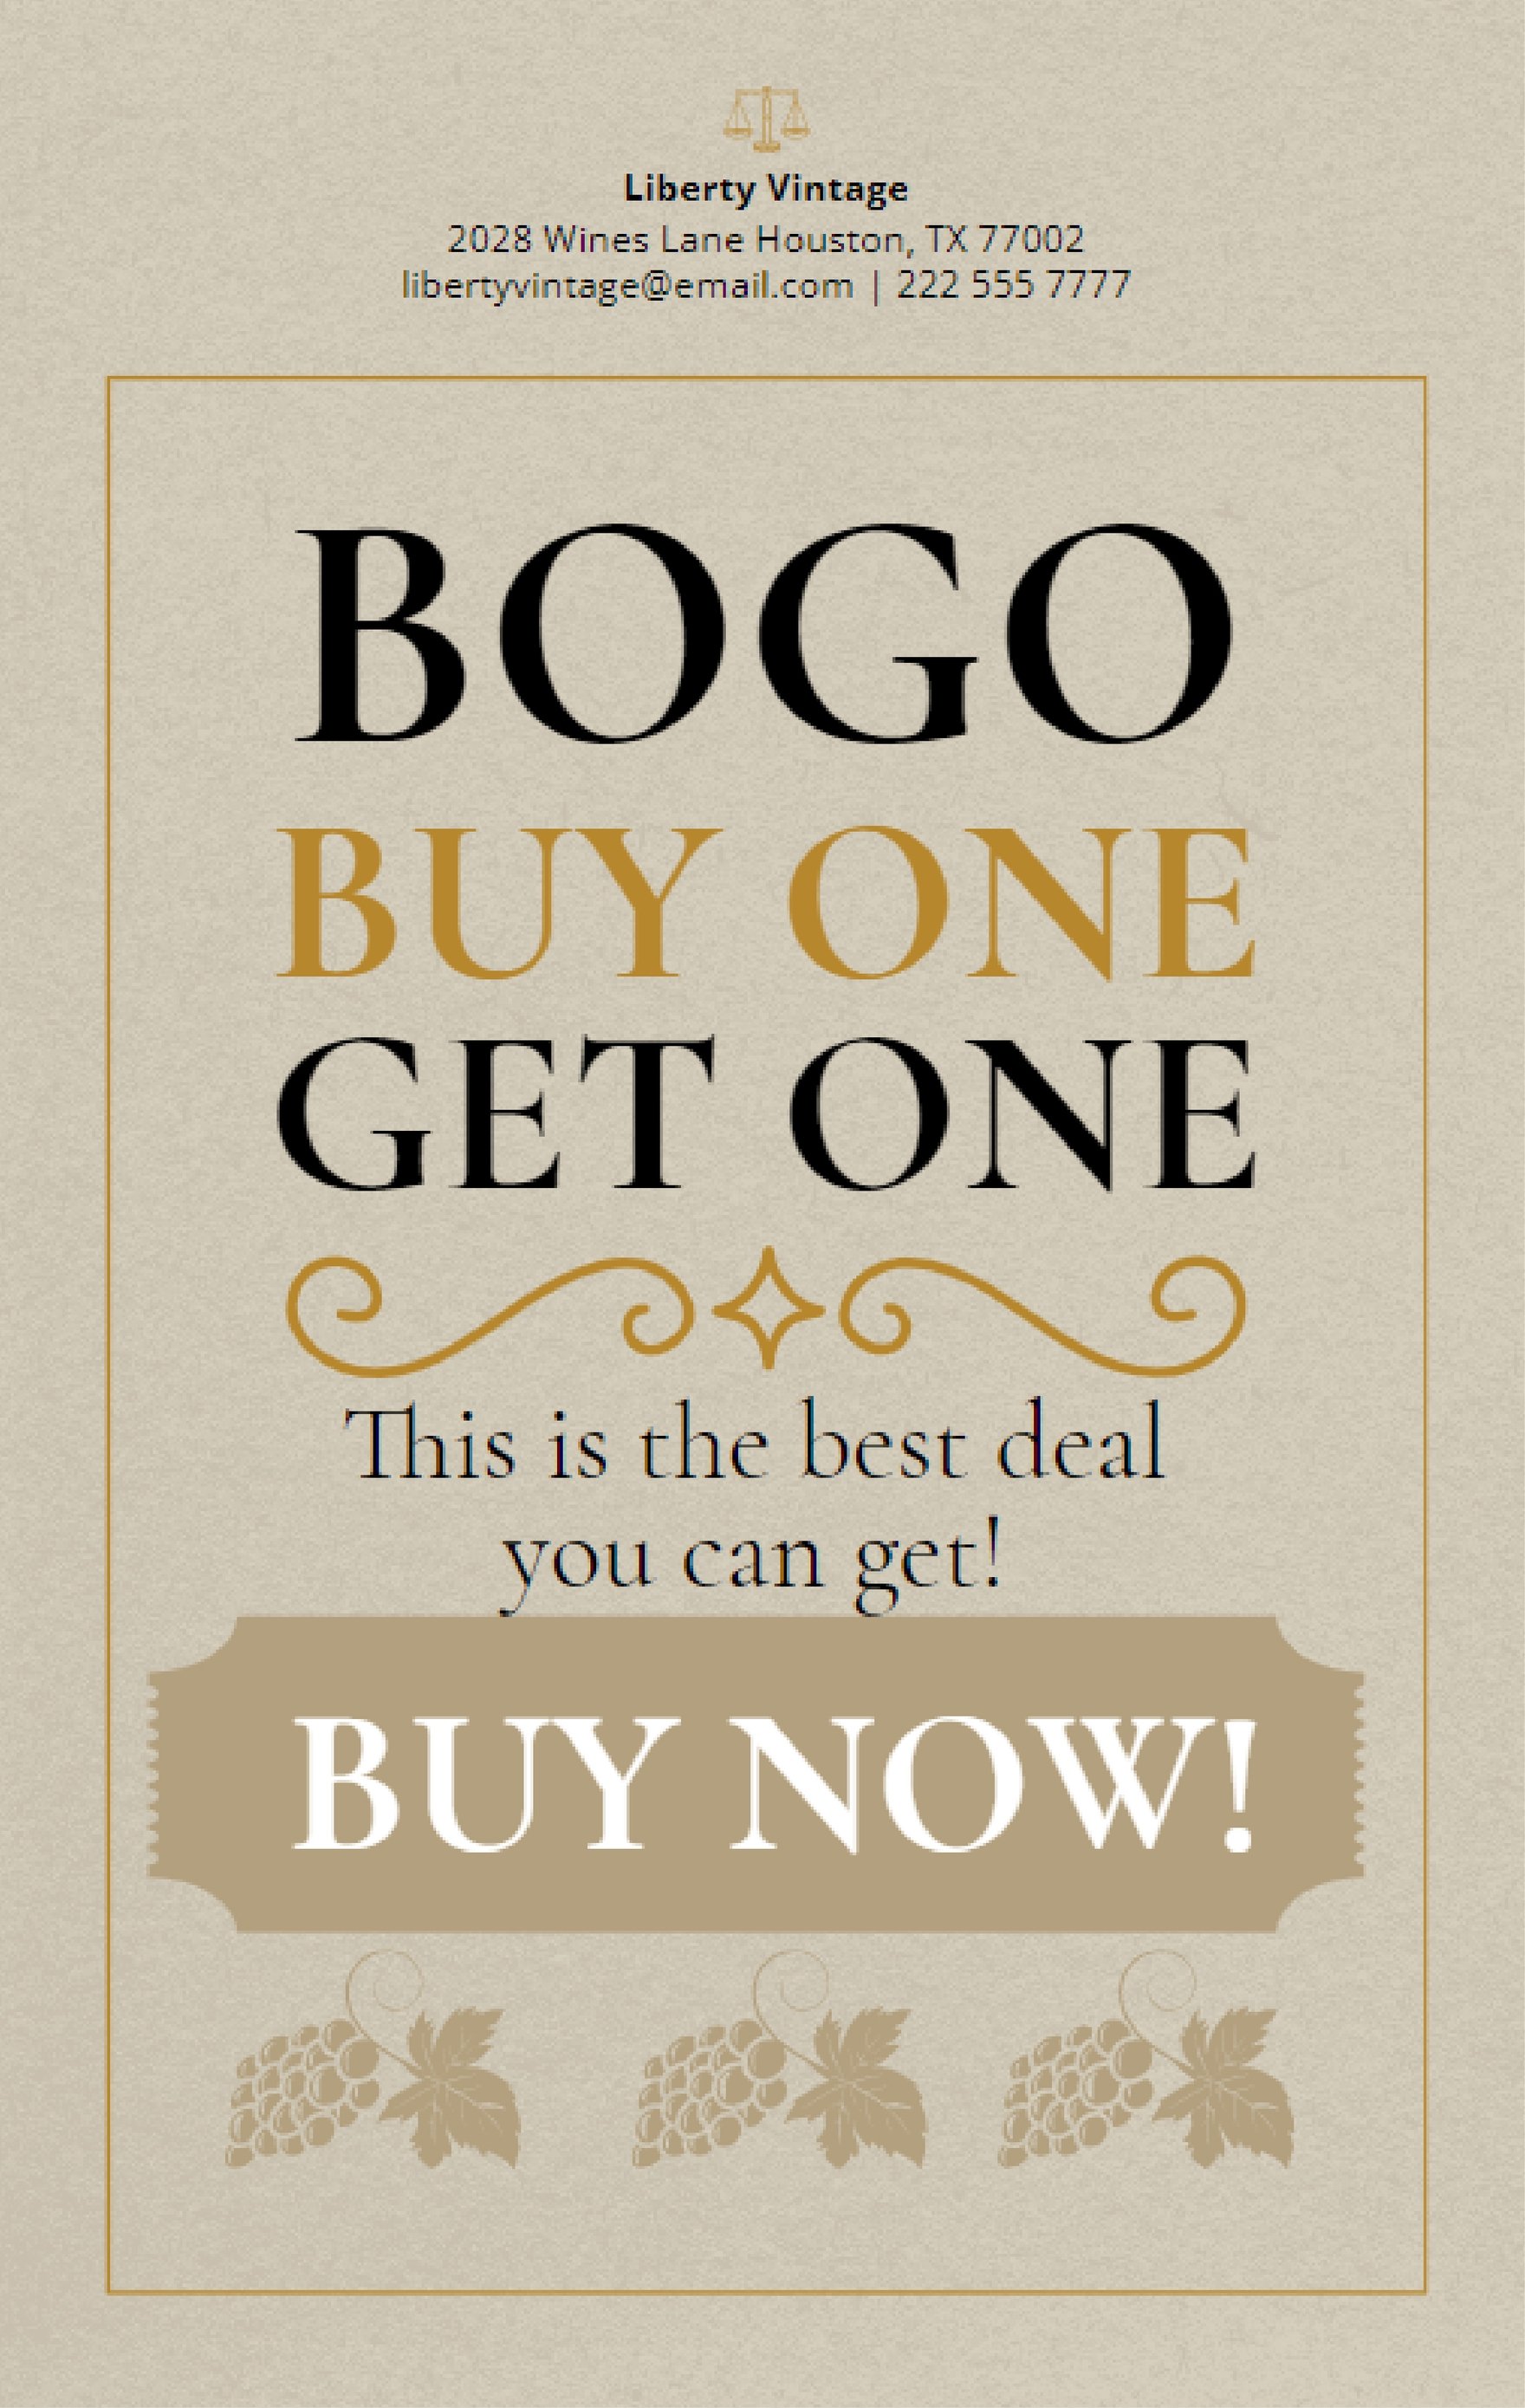 Free Vintage BOGO Poster in Word, Google Docs, Illustrator, PSD, Apple Pages, Publisher